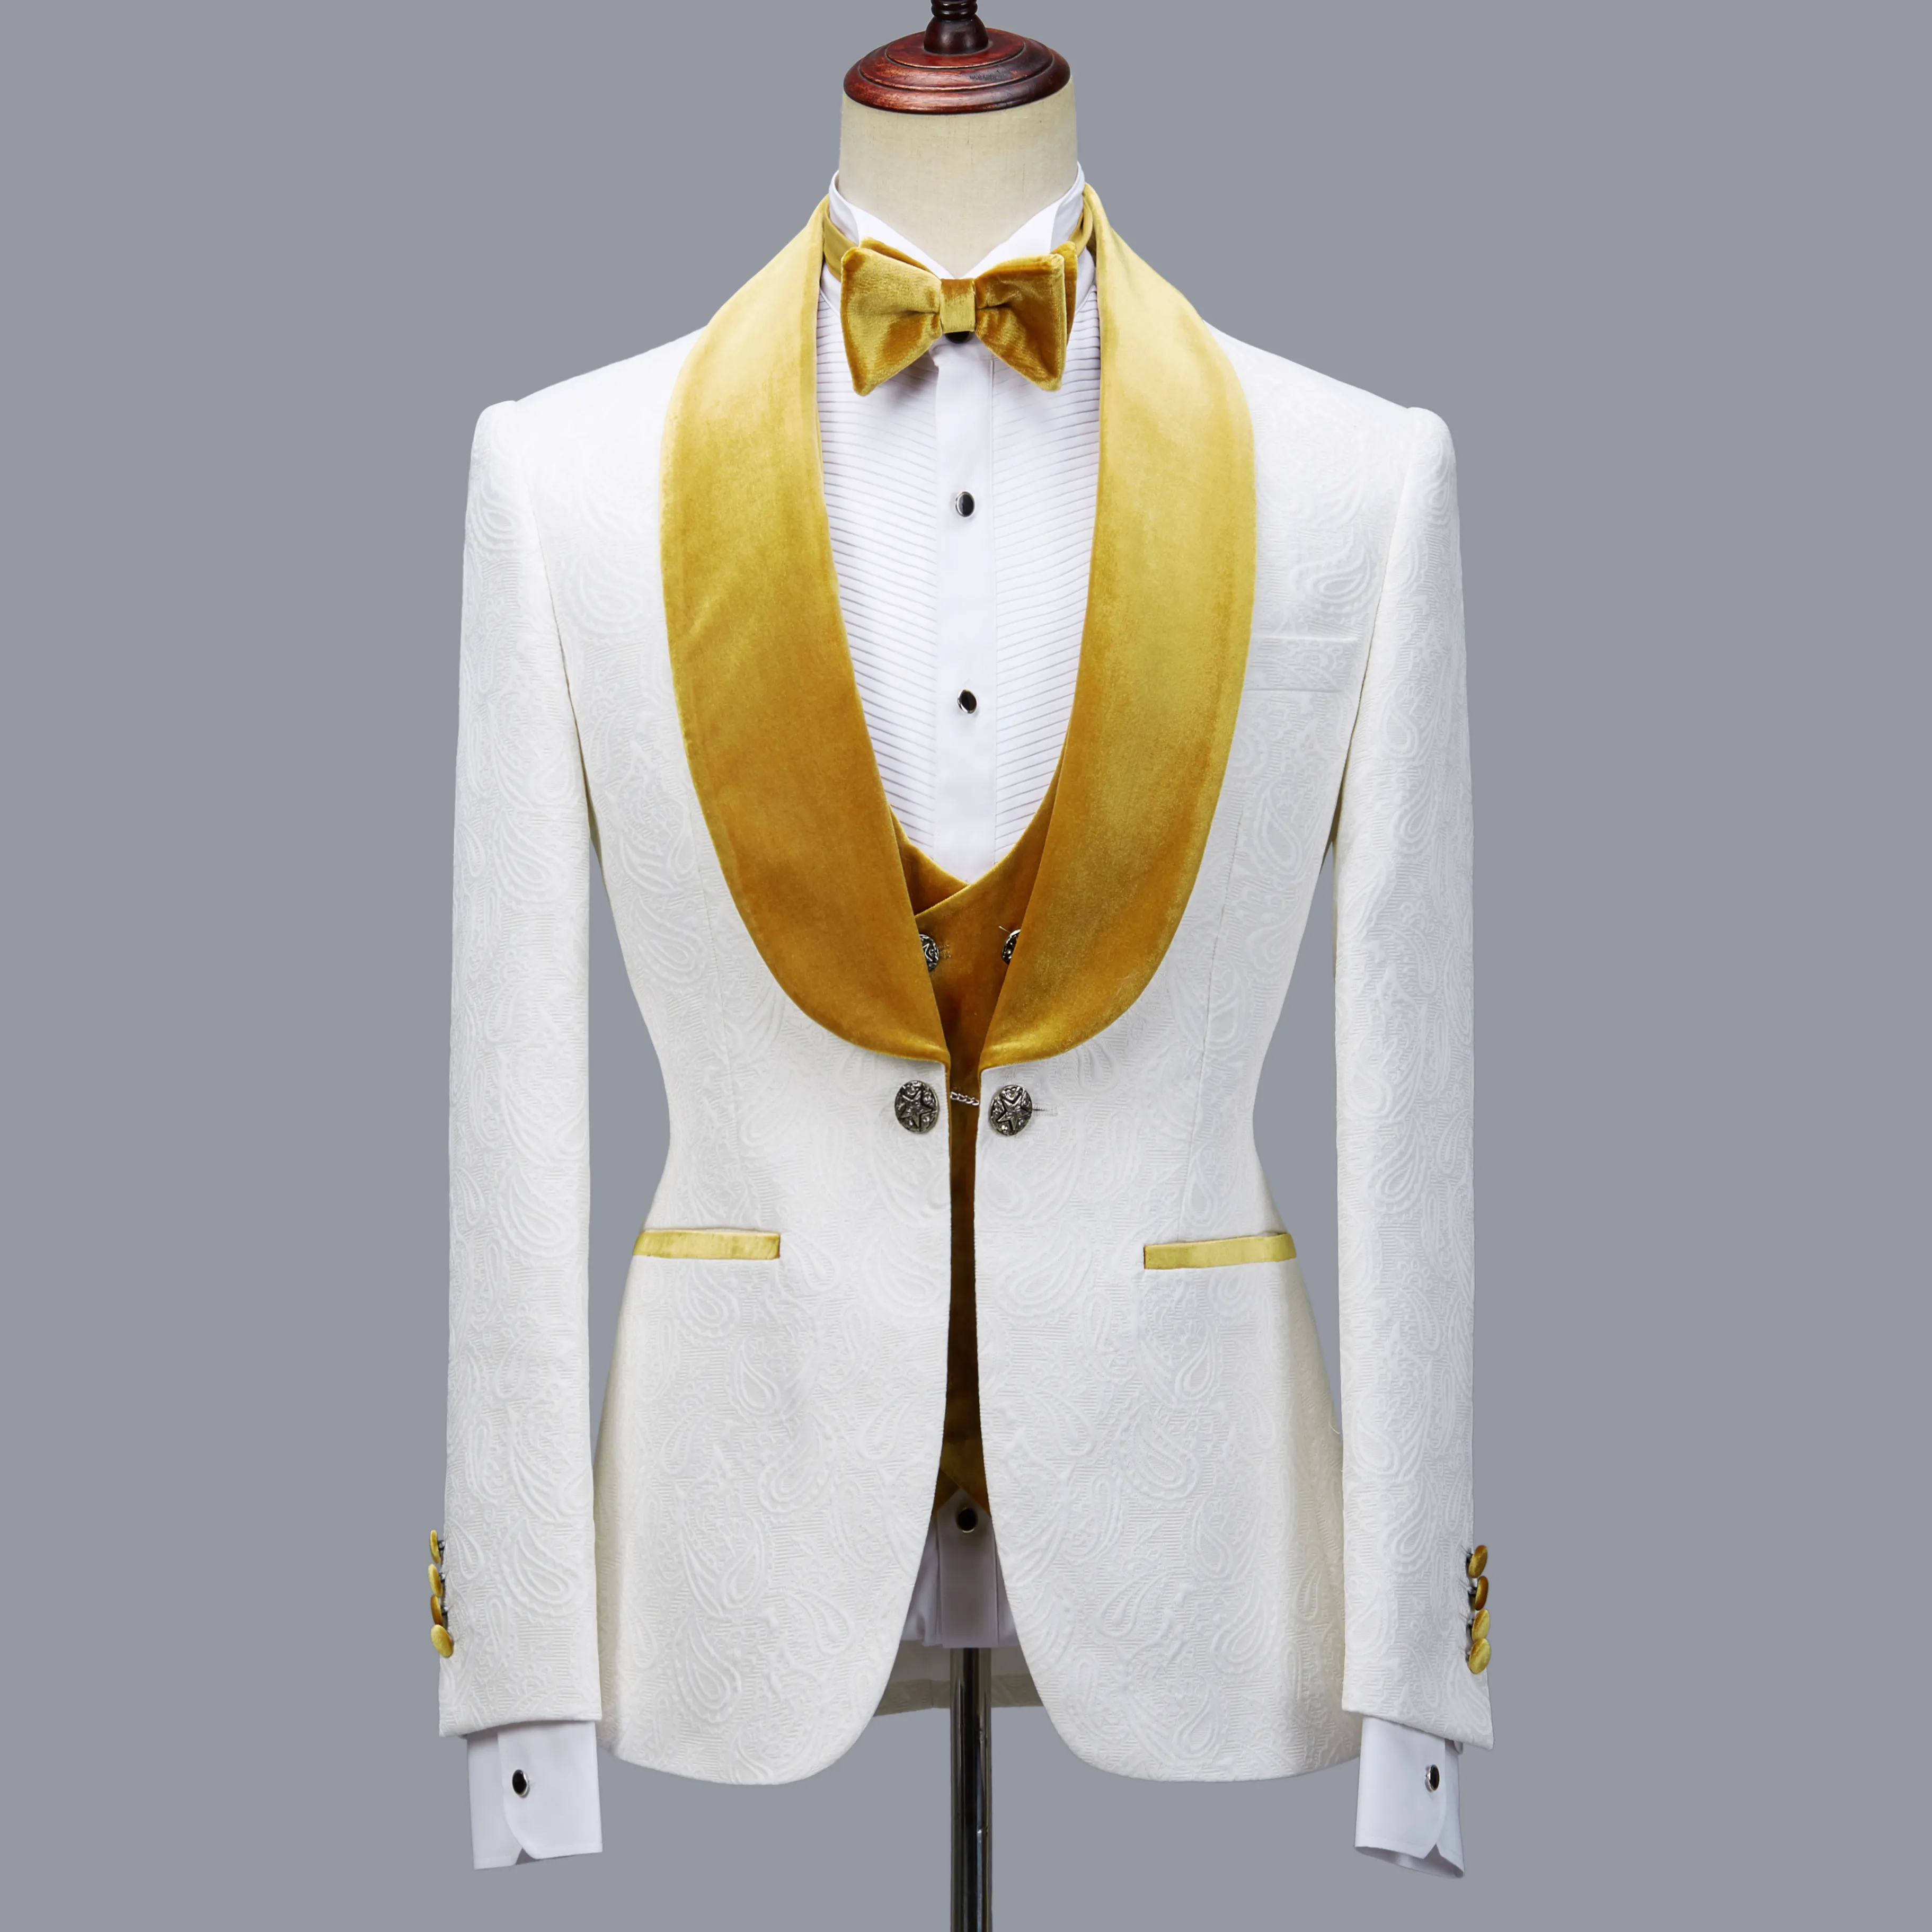 Cenne des graoom moda erkek takım elbise türk düğün ince fildişi beyaz jakarlı kumaş flanel yaka 4 parça seti